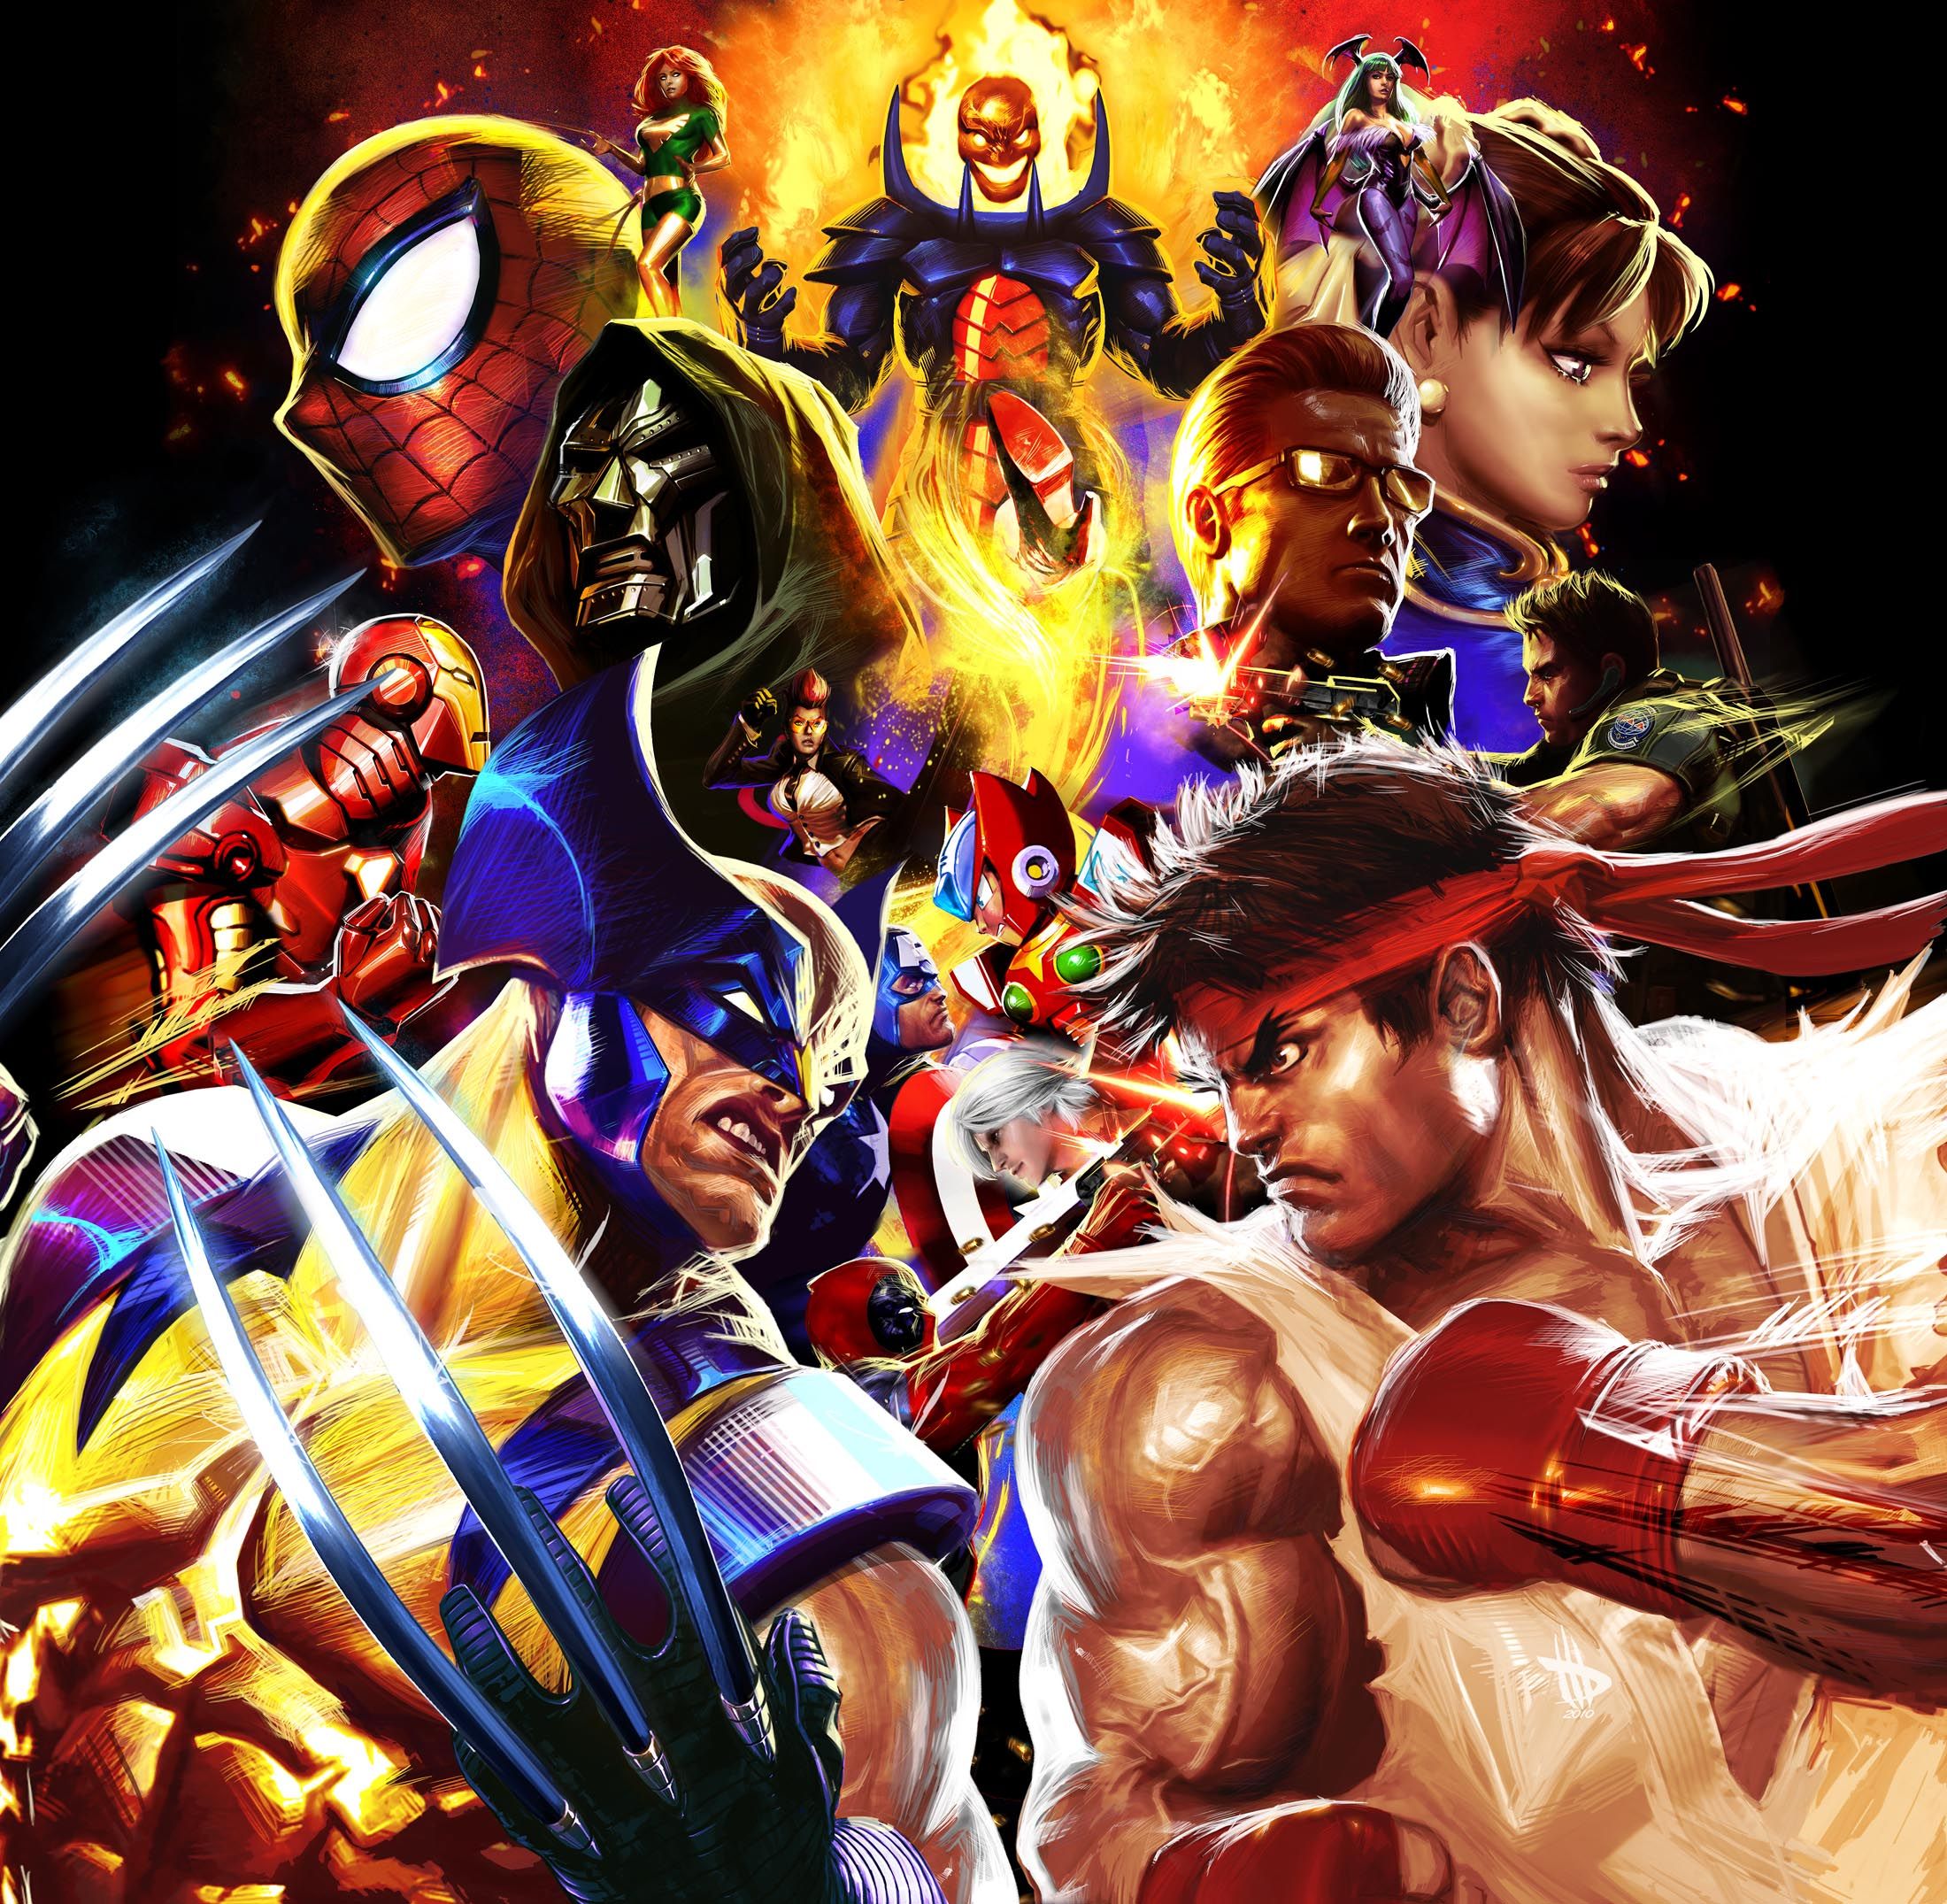 Marvel Vs. Capcom 3 wallpaper, Comics, HQ Marvel Vs. Capcom 3 pictureK Wallpaper 2019